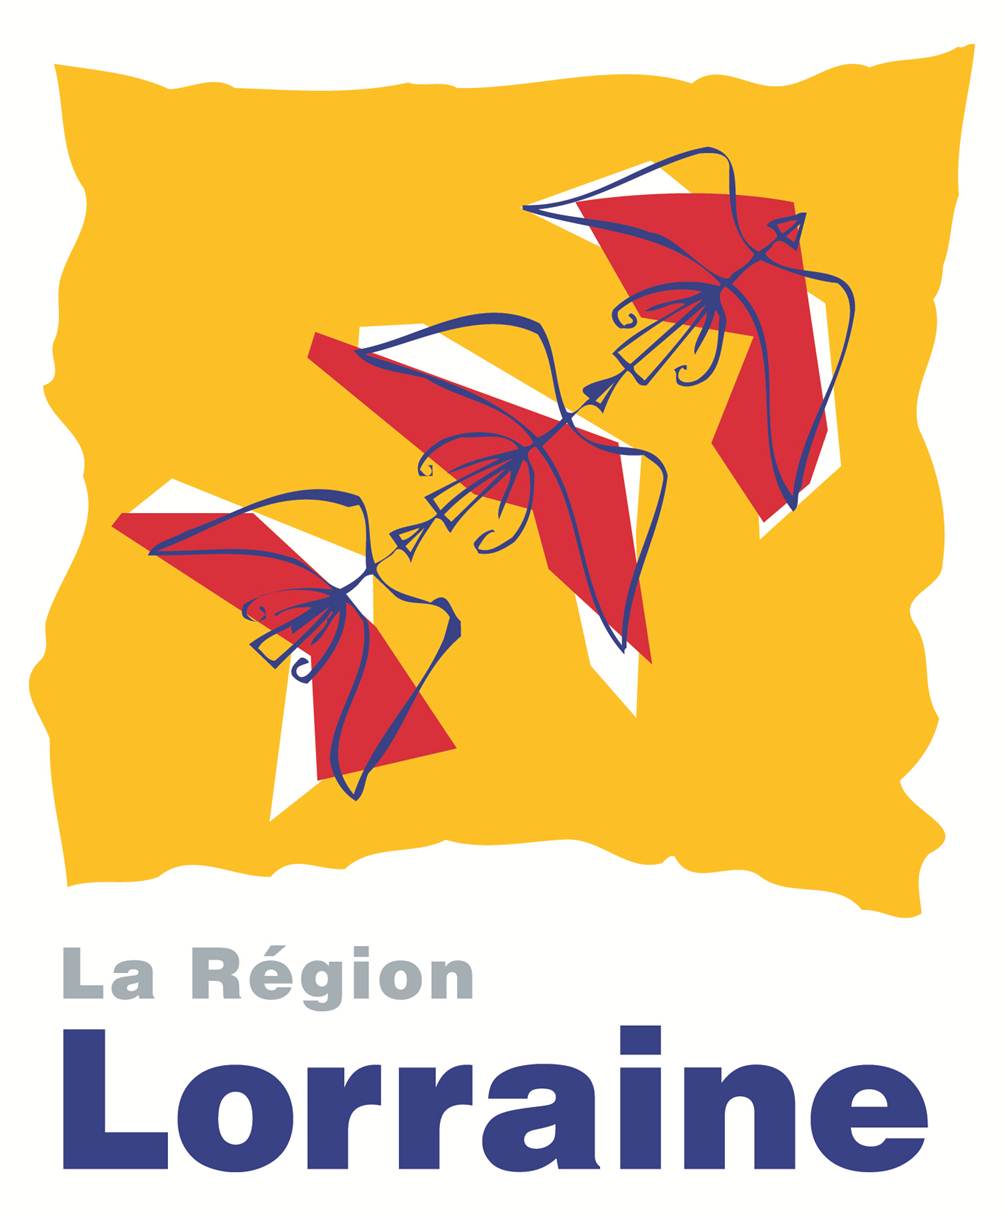 region lorraine